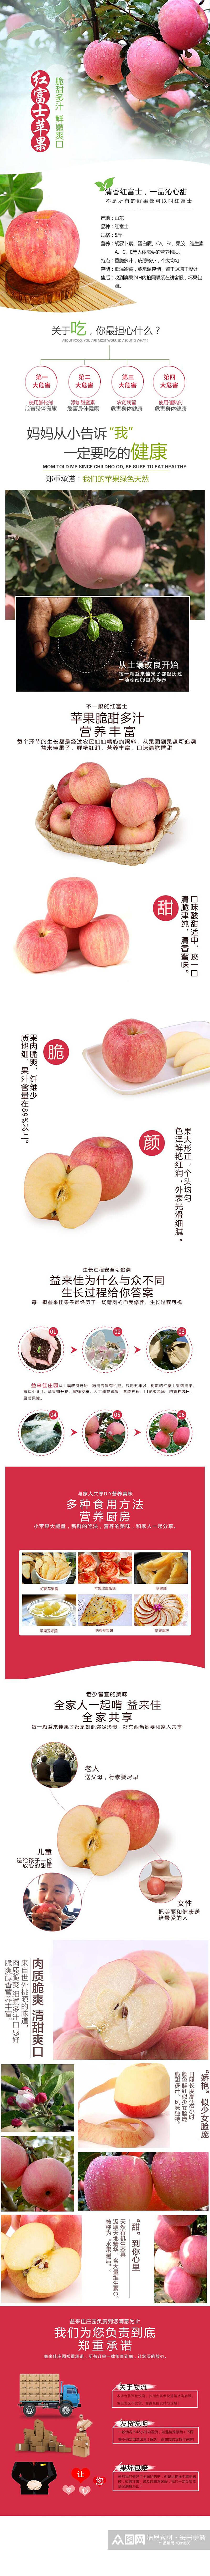 红富士苹果水果详情页素材